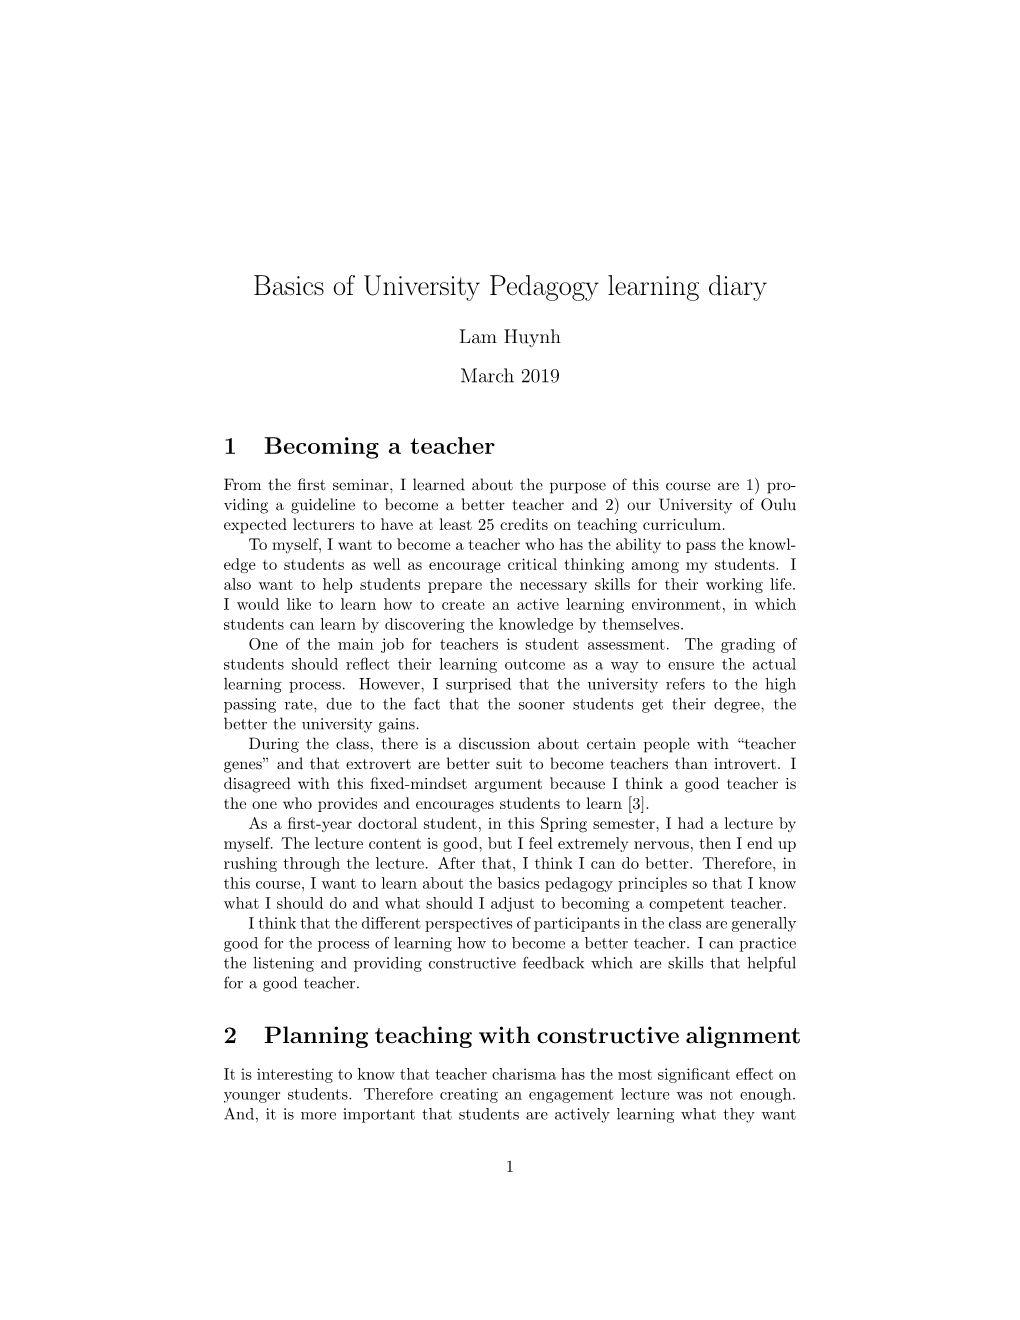 Basics of University Pedagogy Learning Diary